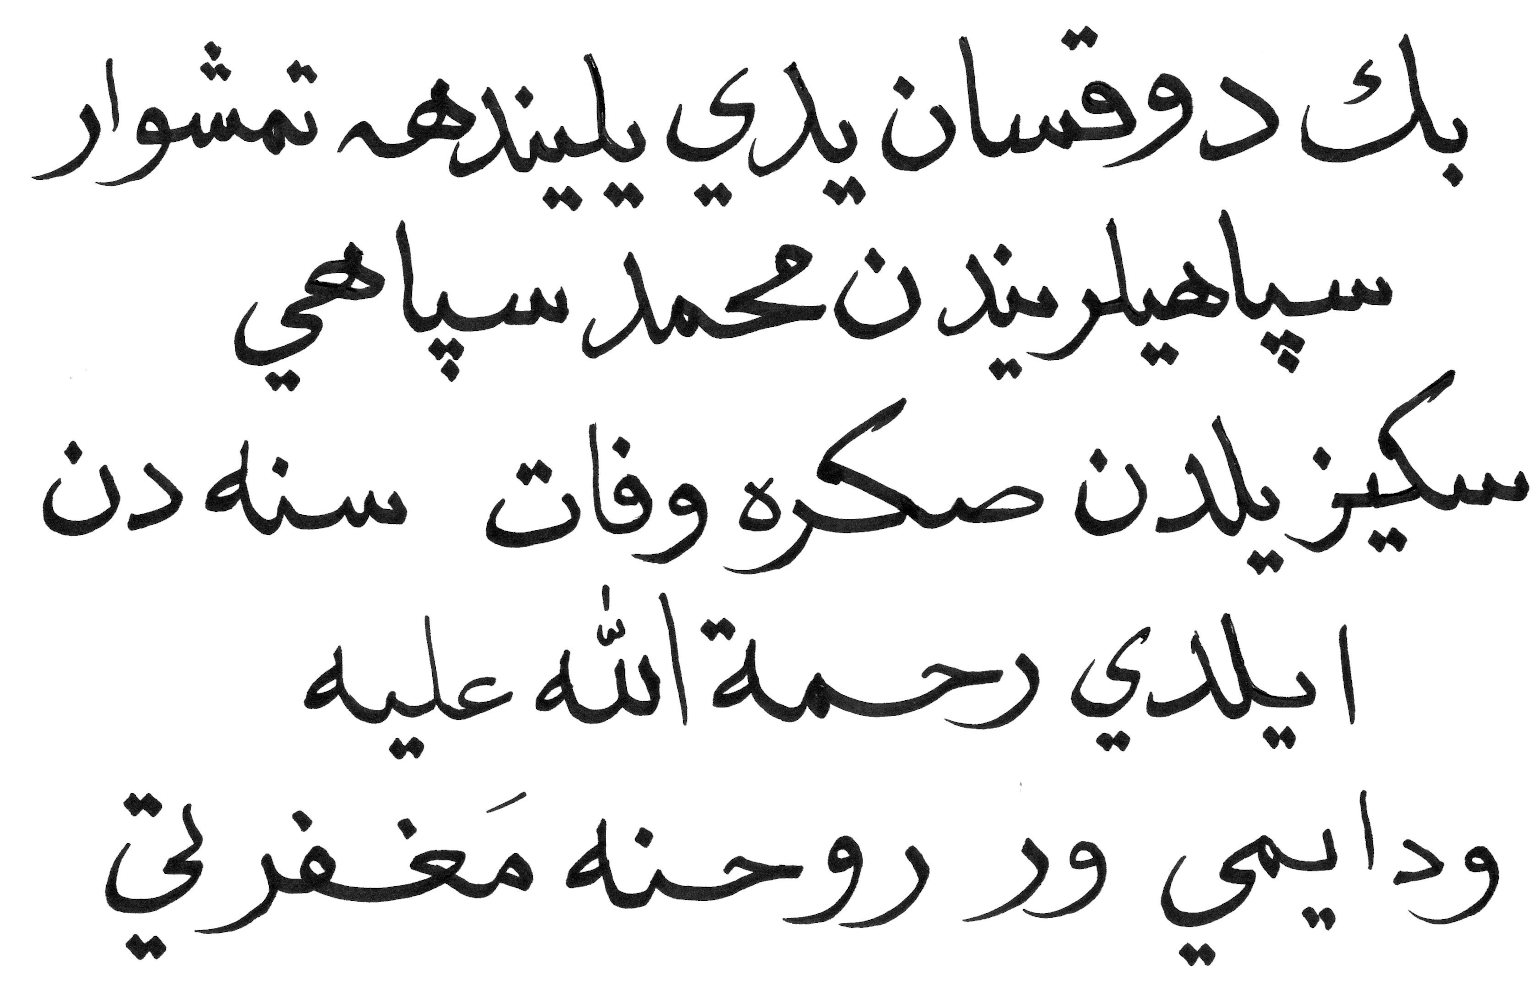 osmanischen Inschrift kalligraphisch-sinnhaft